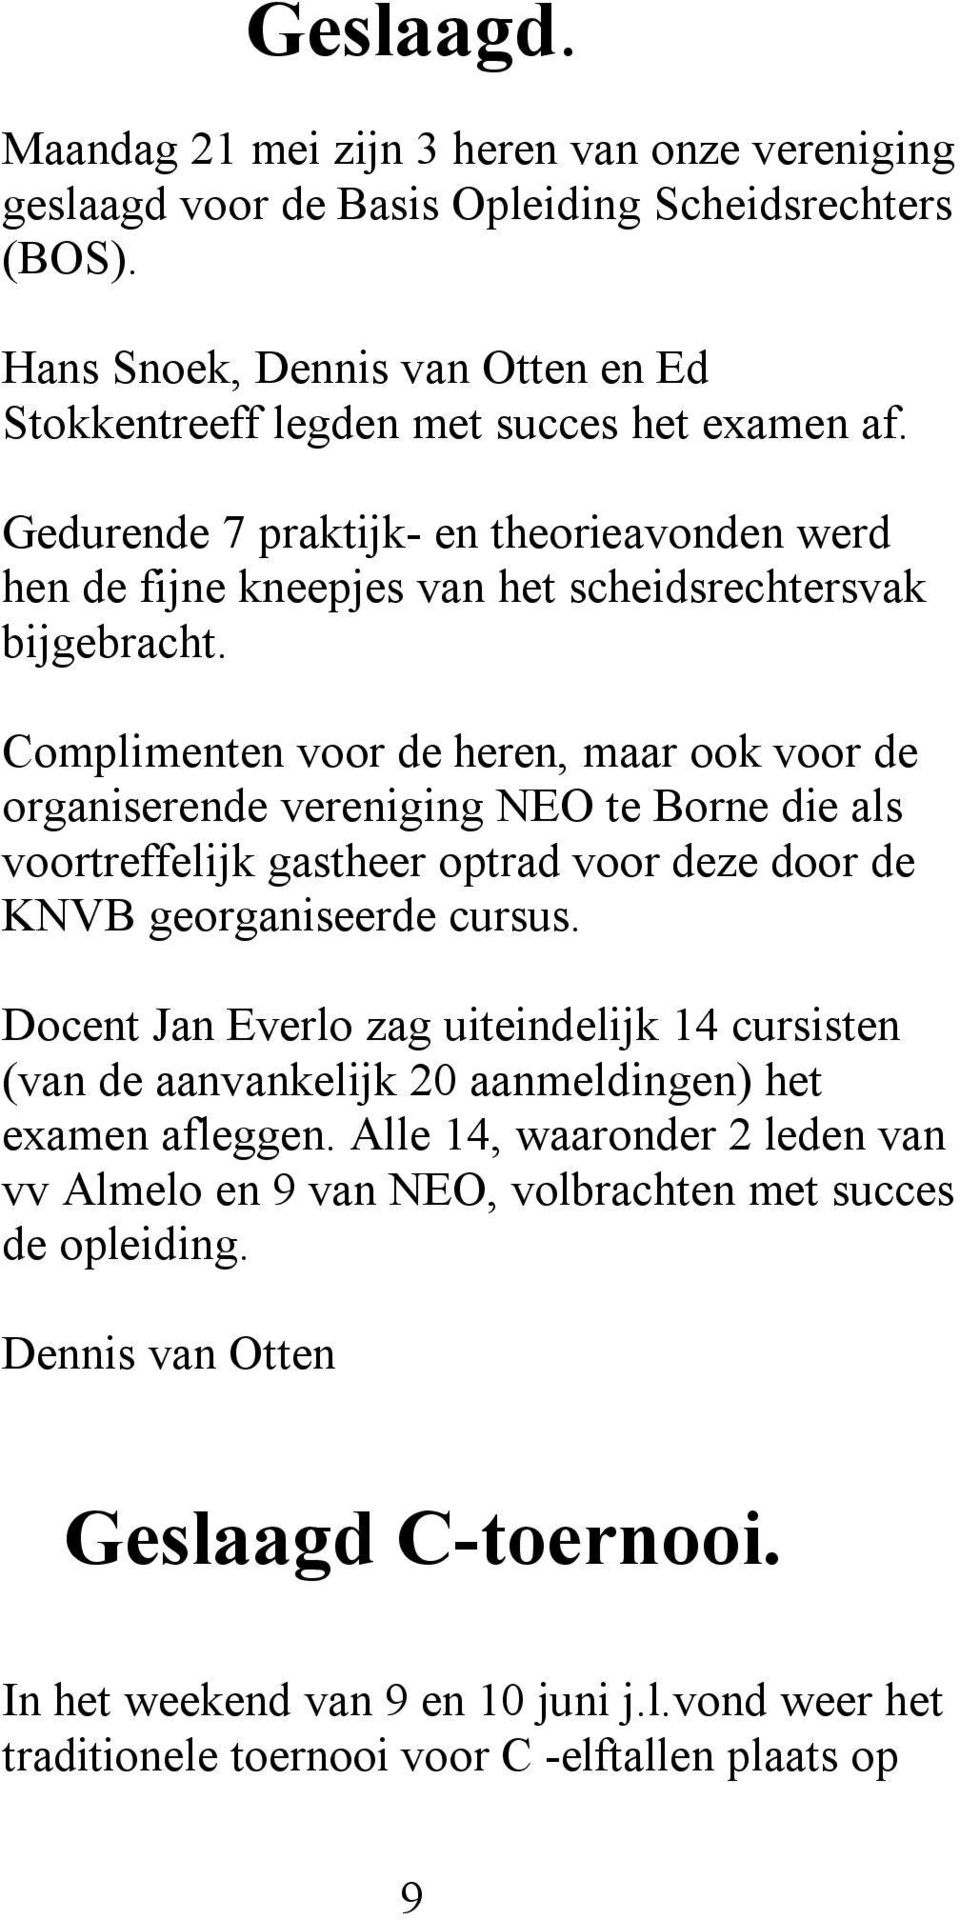 Complimenten voor de heren, maar ook voor de organiserende vereniging NEO te Borne die als voortreffelijk gastheer optrad voor deze door de KNVB georganiseerde cursus.